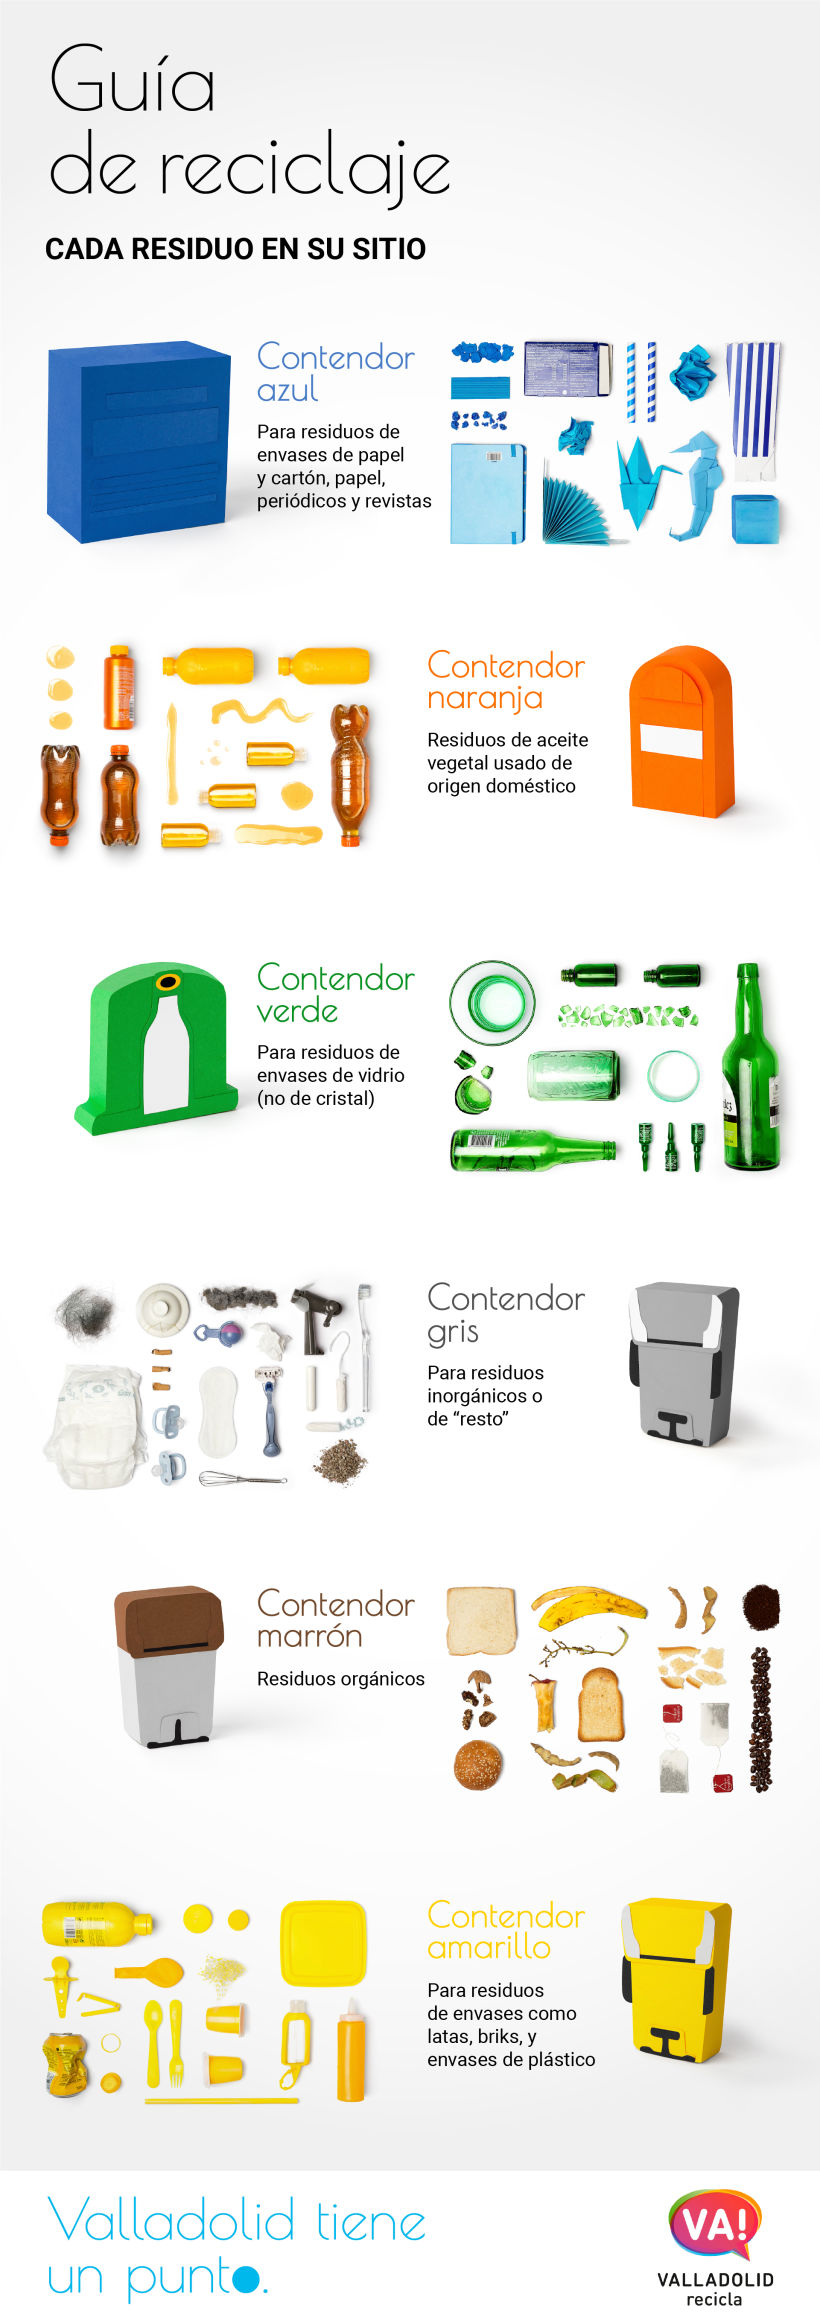 Diseño de infografías fotográficas para la campaña de concienciación ciudadana de Valladolid Recicla 17